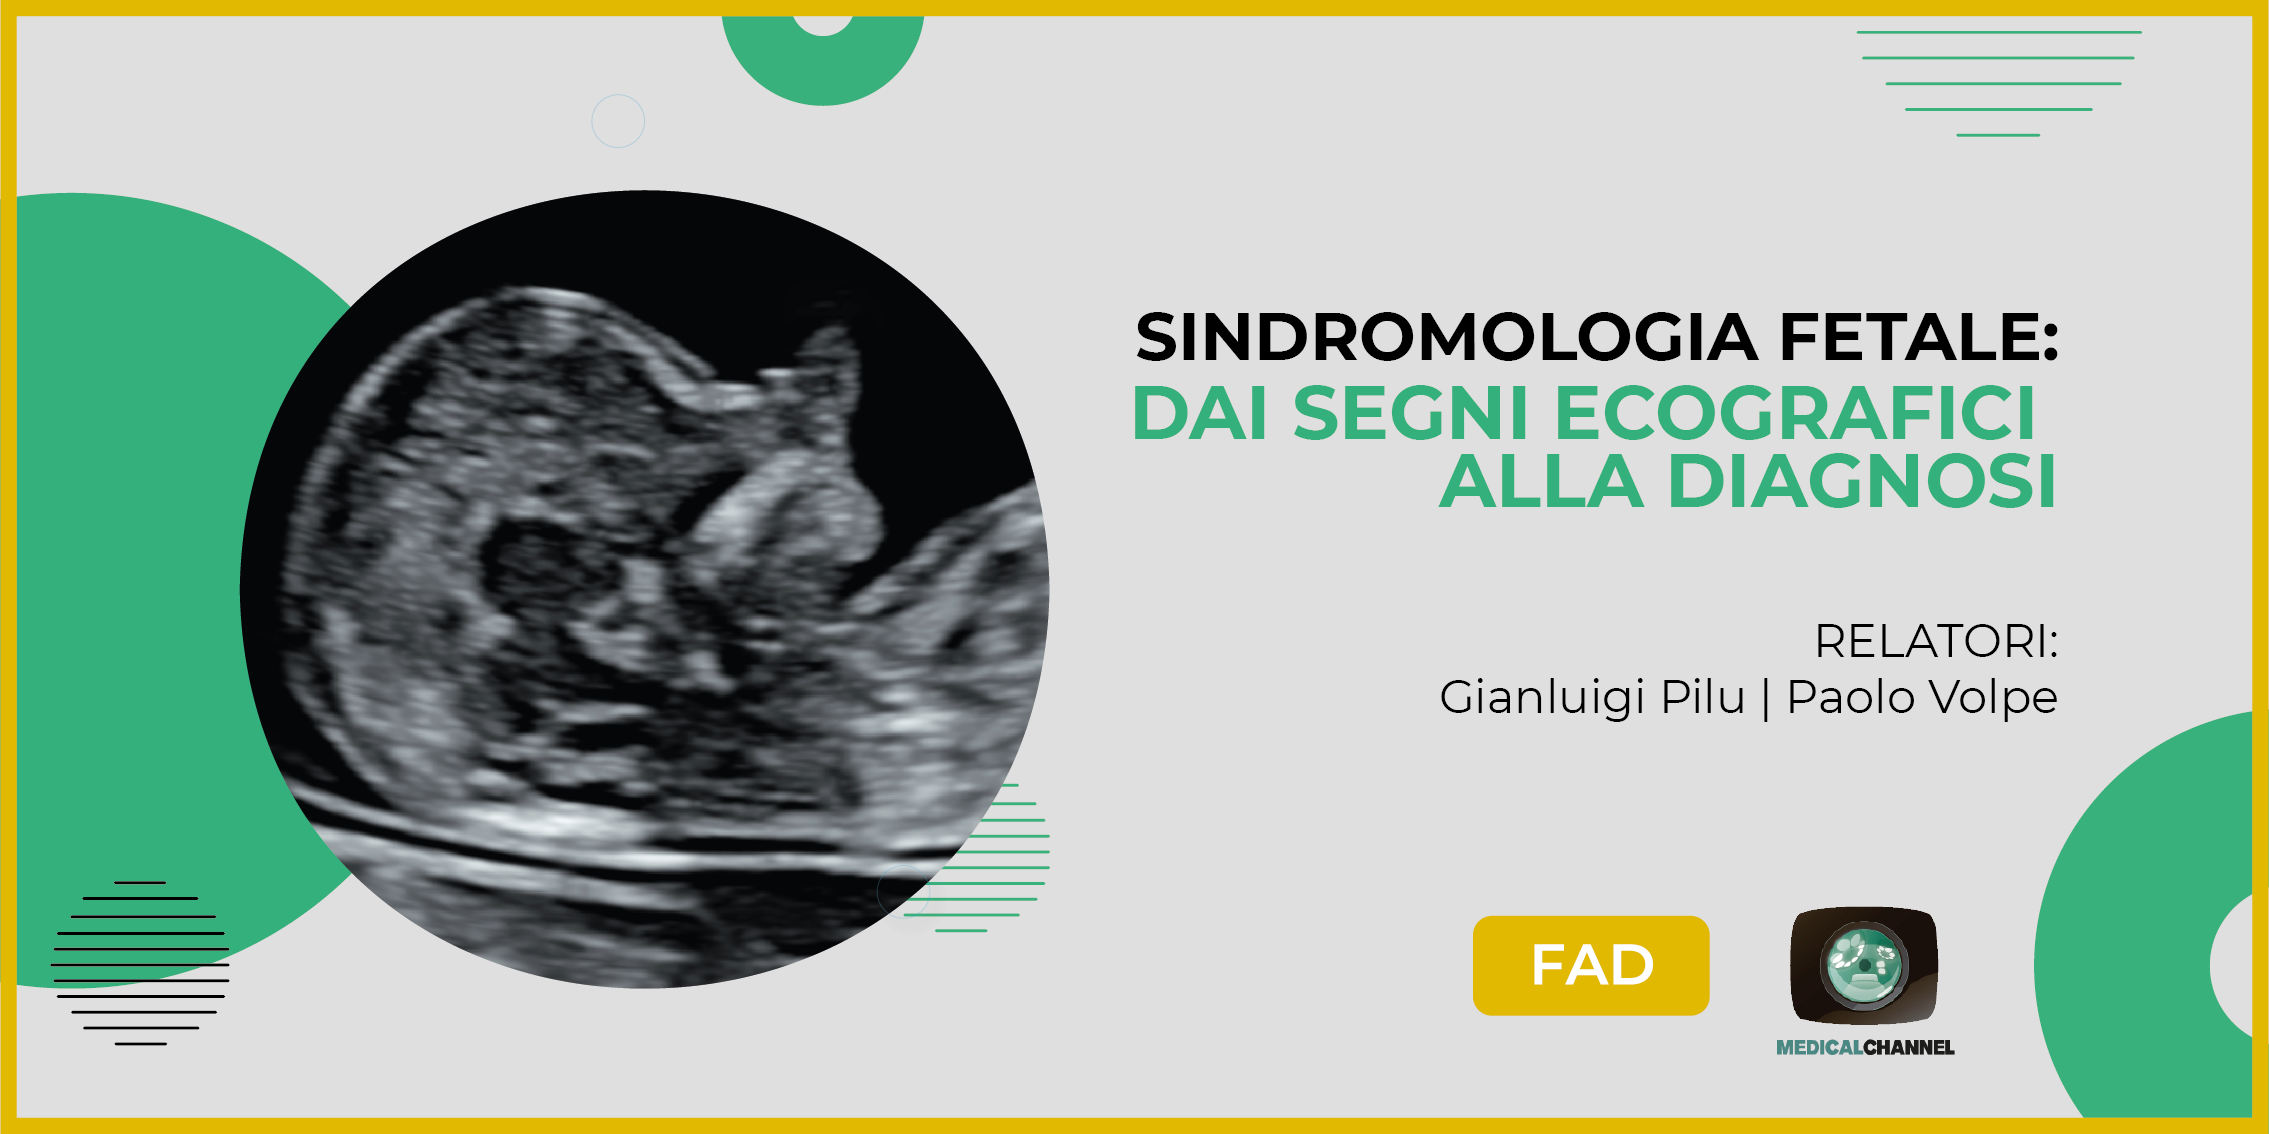 Sindromologia fetale: dai segni ecografici alla diagnosi - FAD